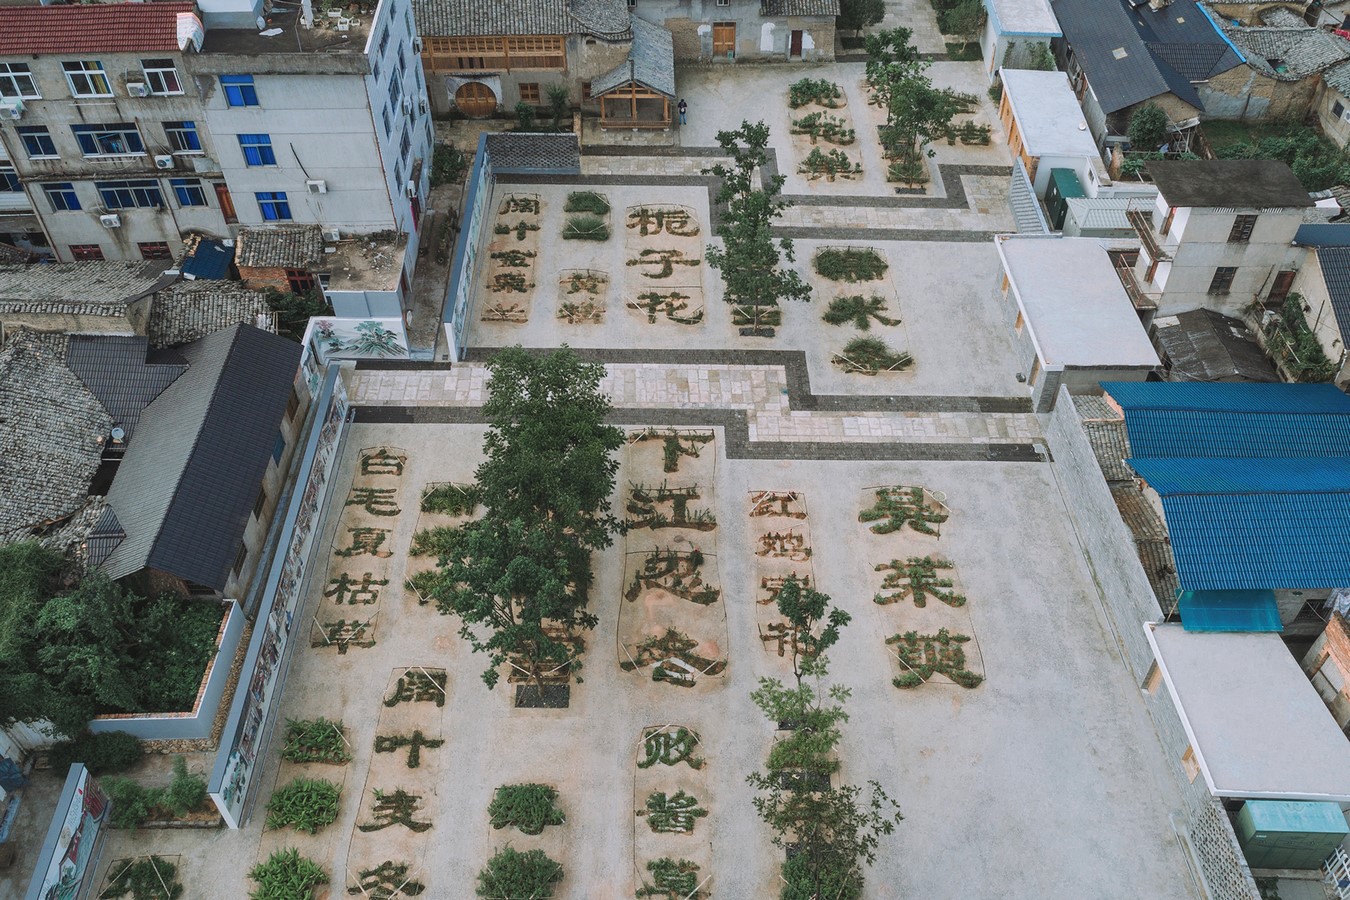 Chinese Herbal Garden (2018) - Sheet3